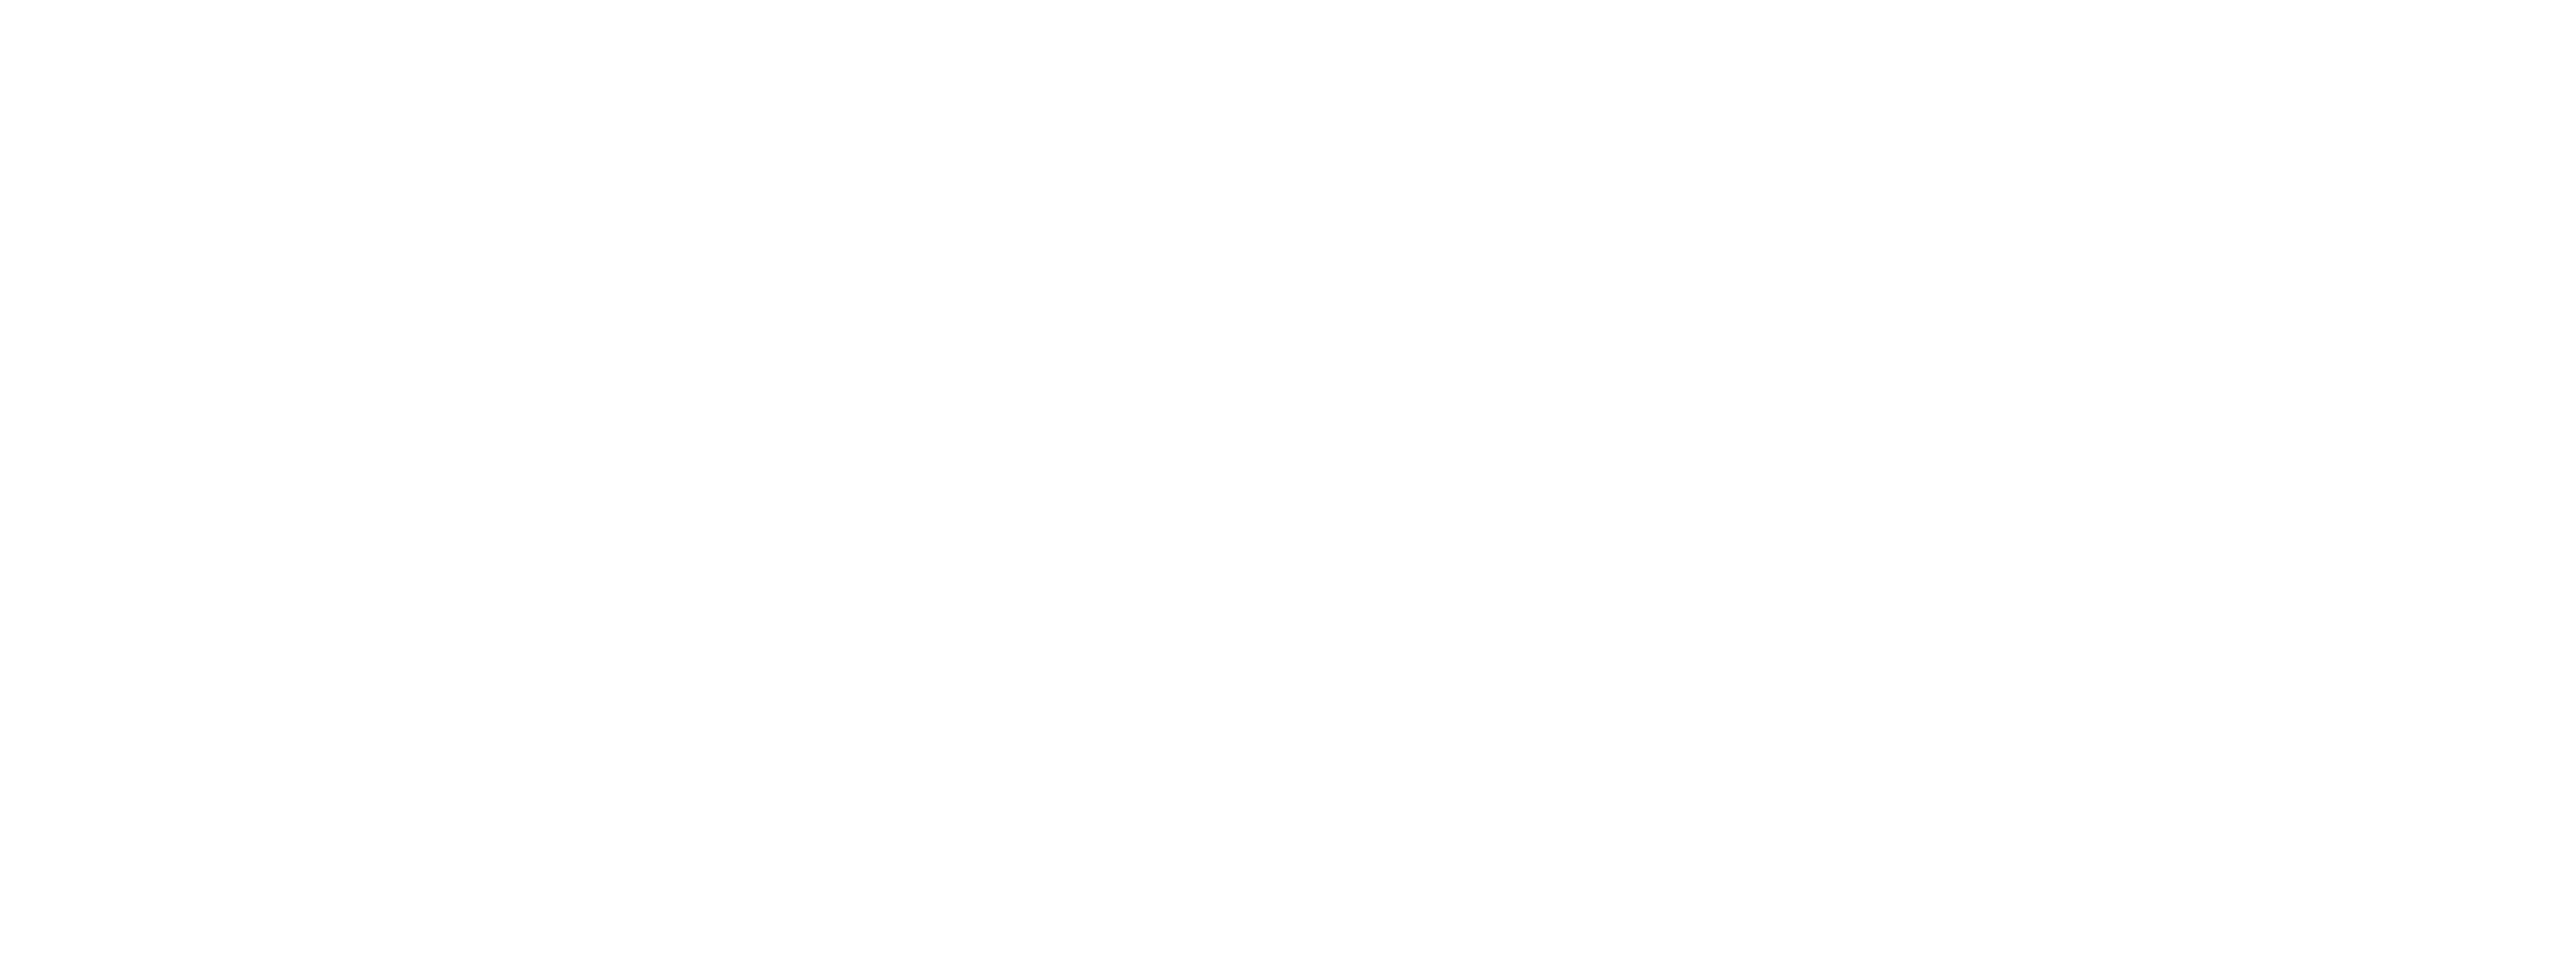 Beelzebus